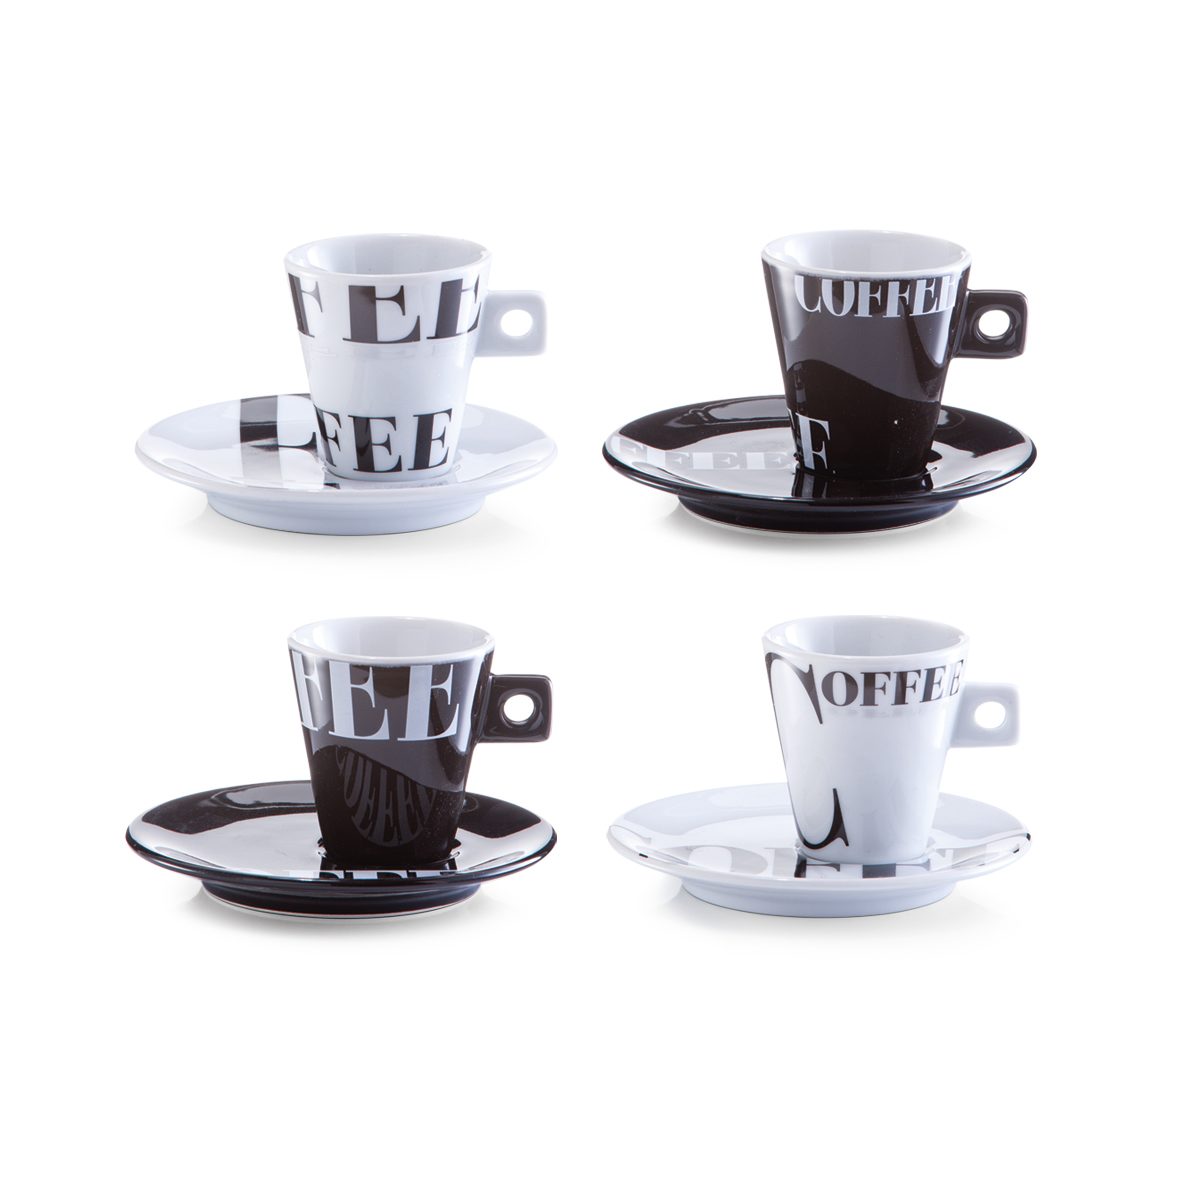 Espressotasse Zeller present aus Porzellan in Weiß Espressotassen-Set weißes Porzellan & Motiv Coffee style - vierteilig